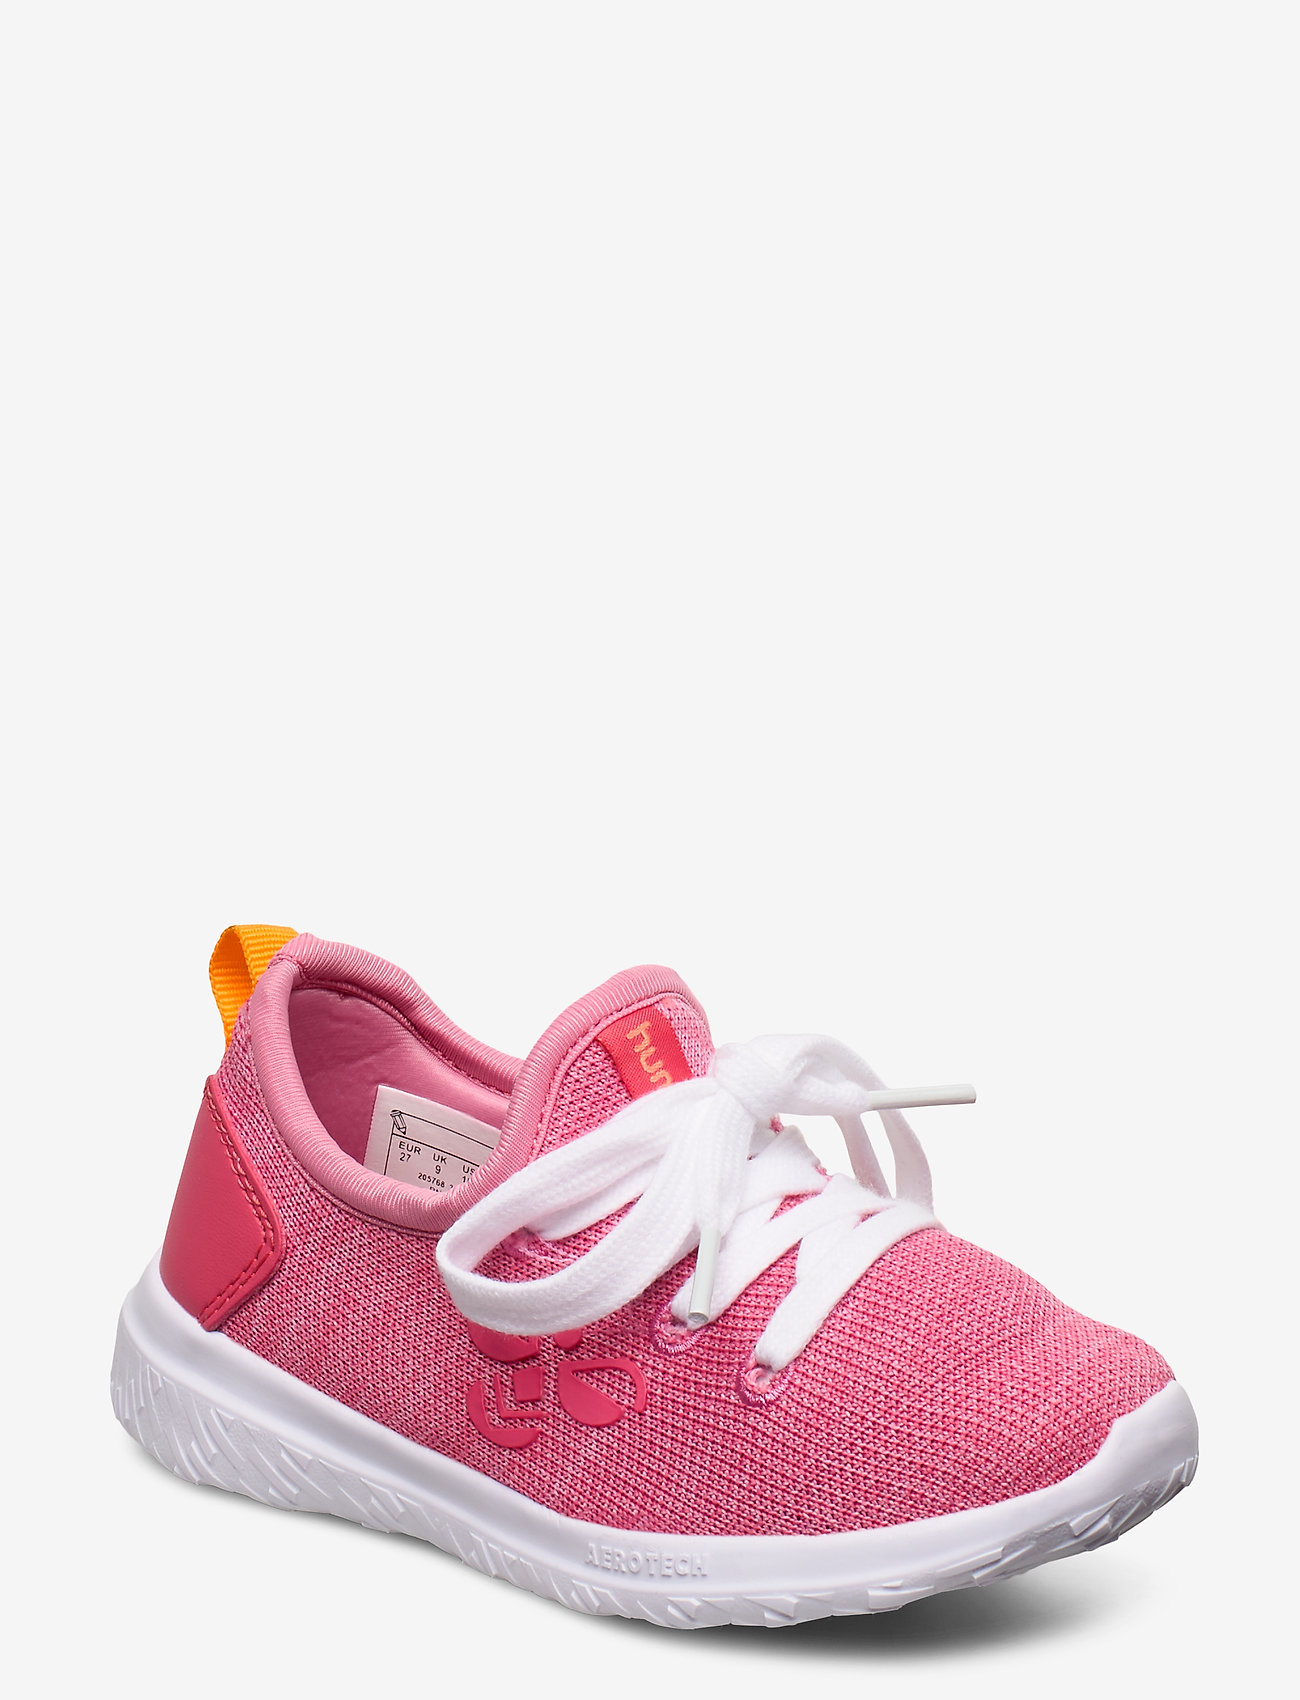 pink infant jordan shoes